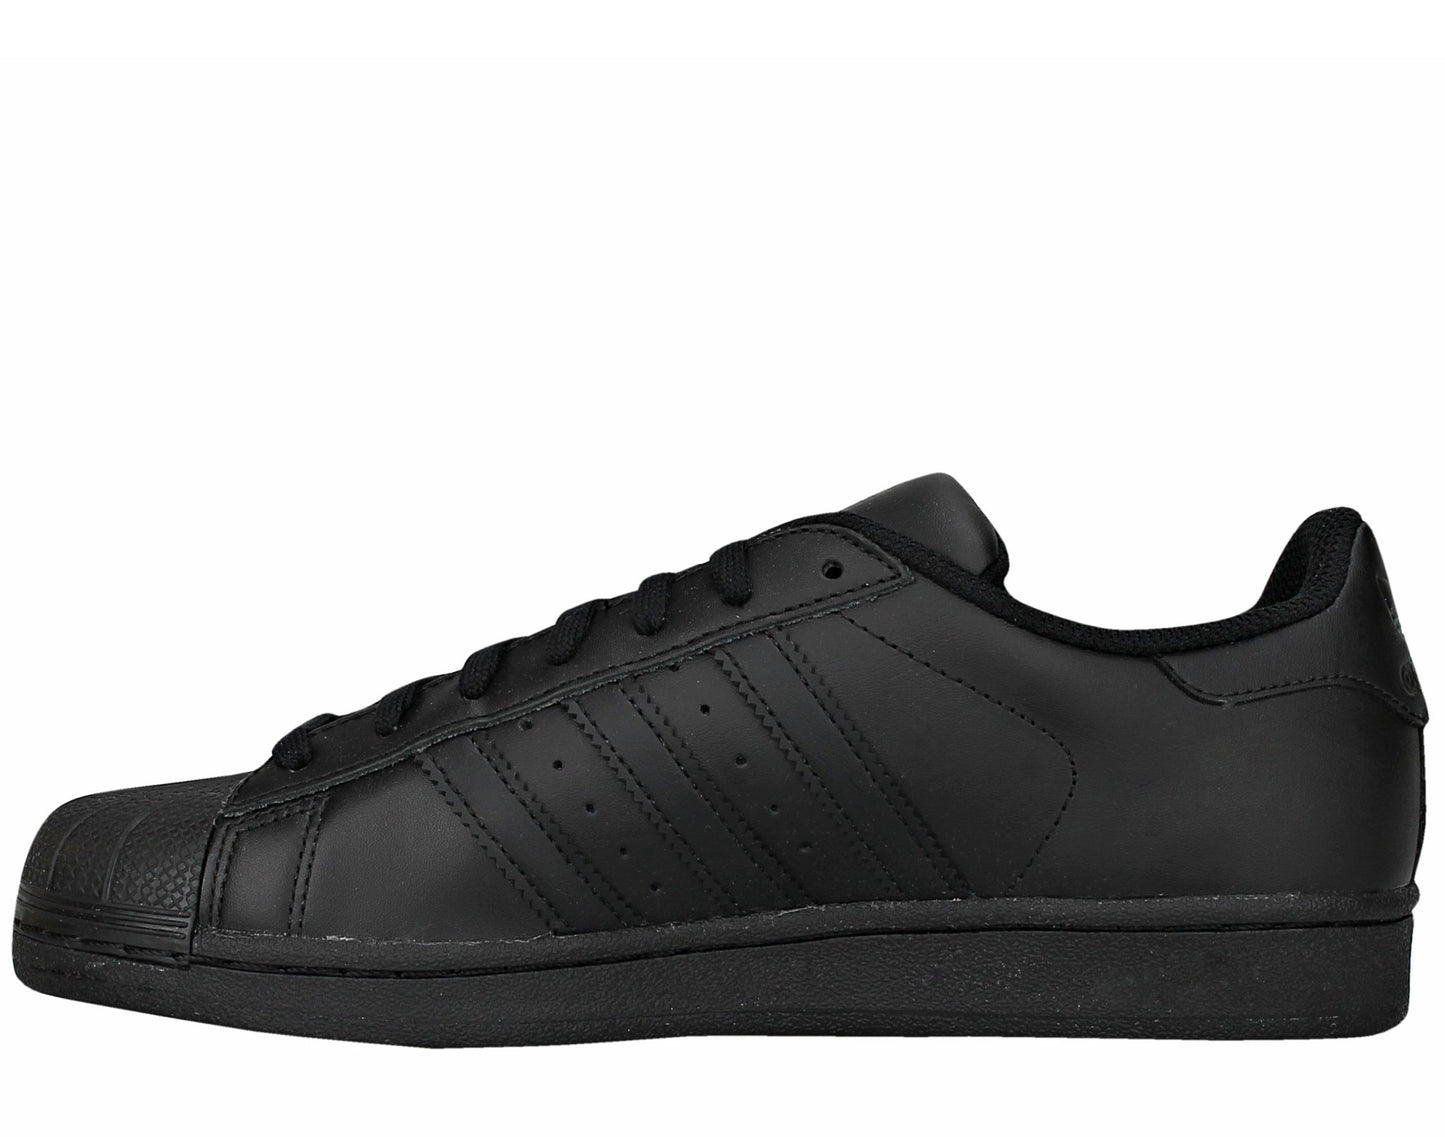 Adidas Originals Superstar Foundation Black/Black Men's Basketball Shoes AF5666 - Becauze